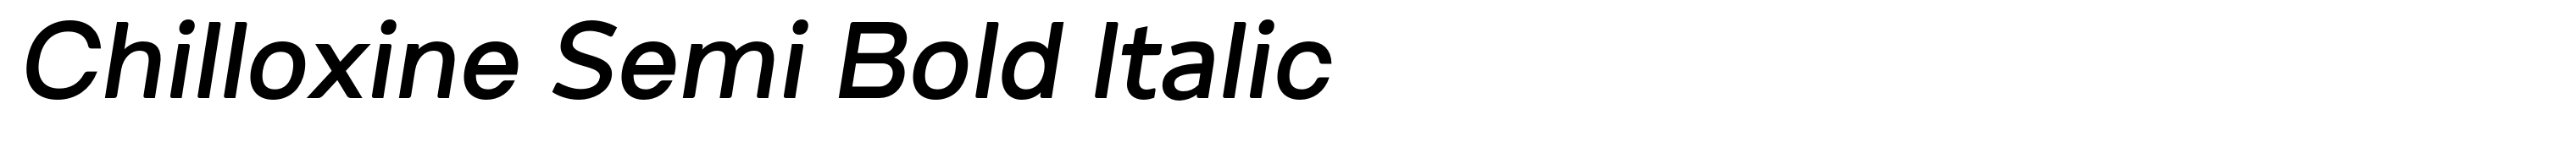 Chilloxine Semi Bold Italic